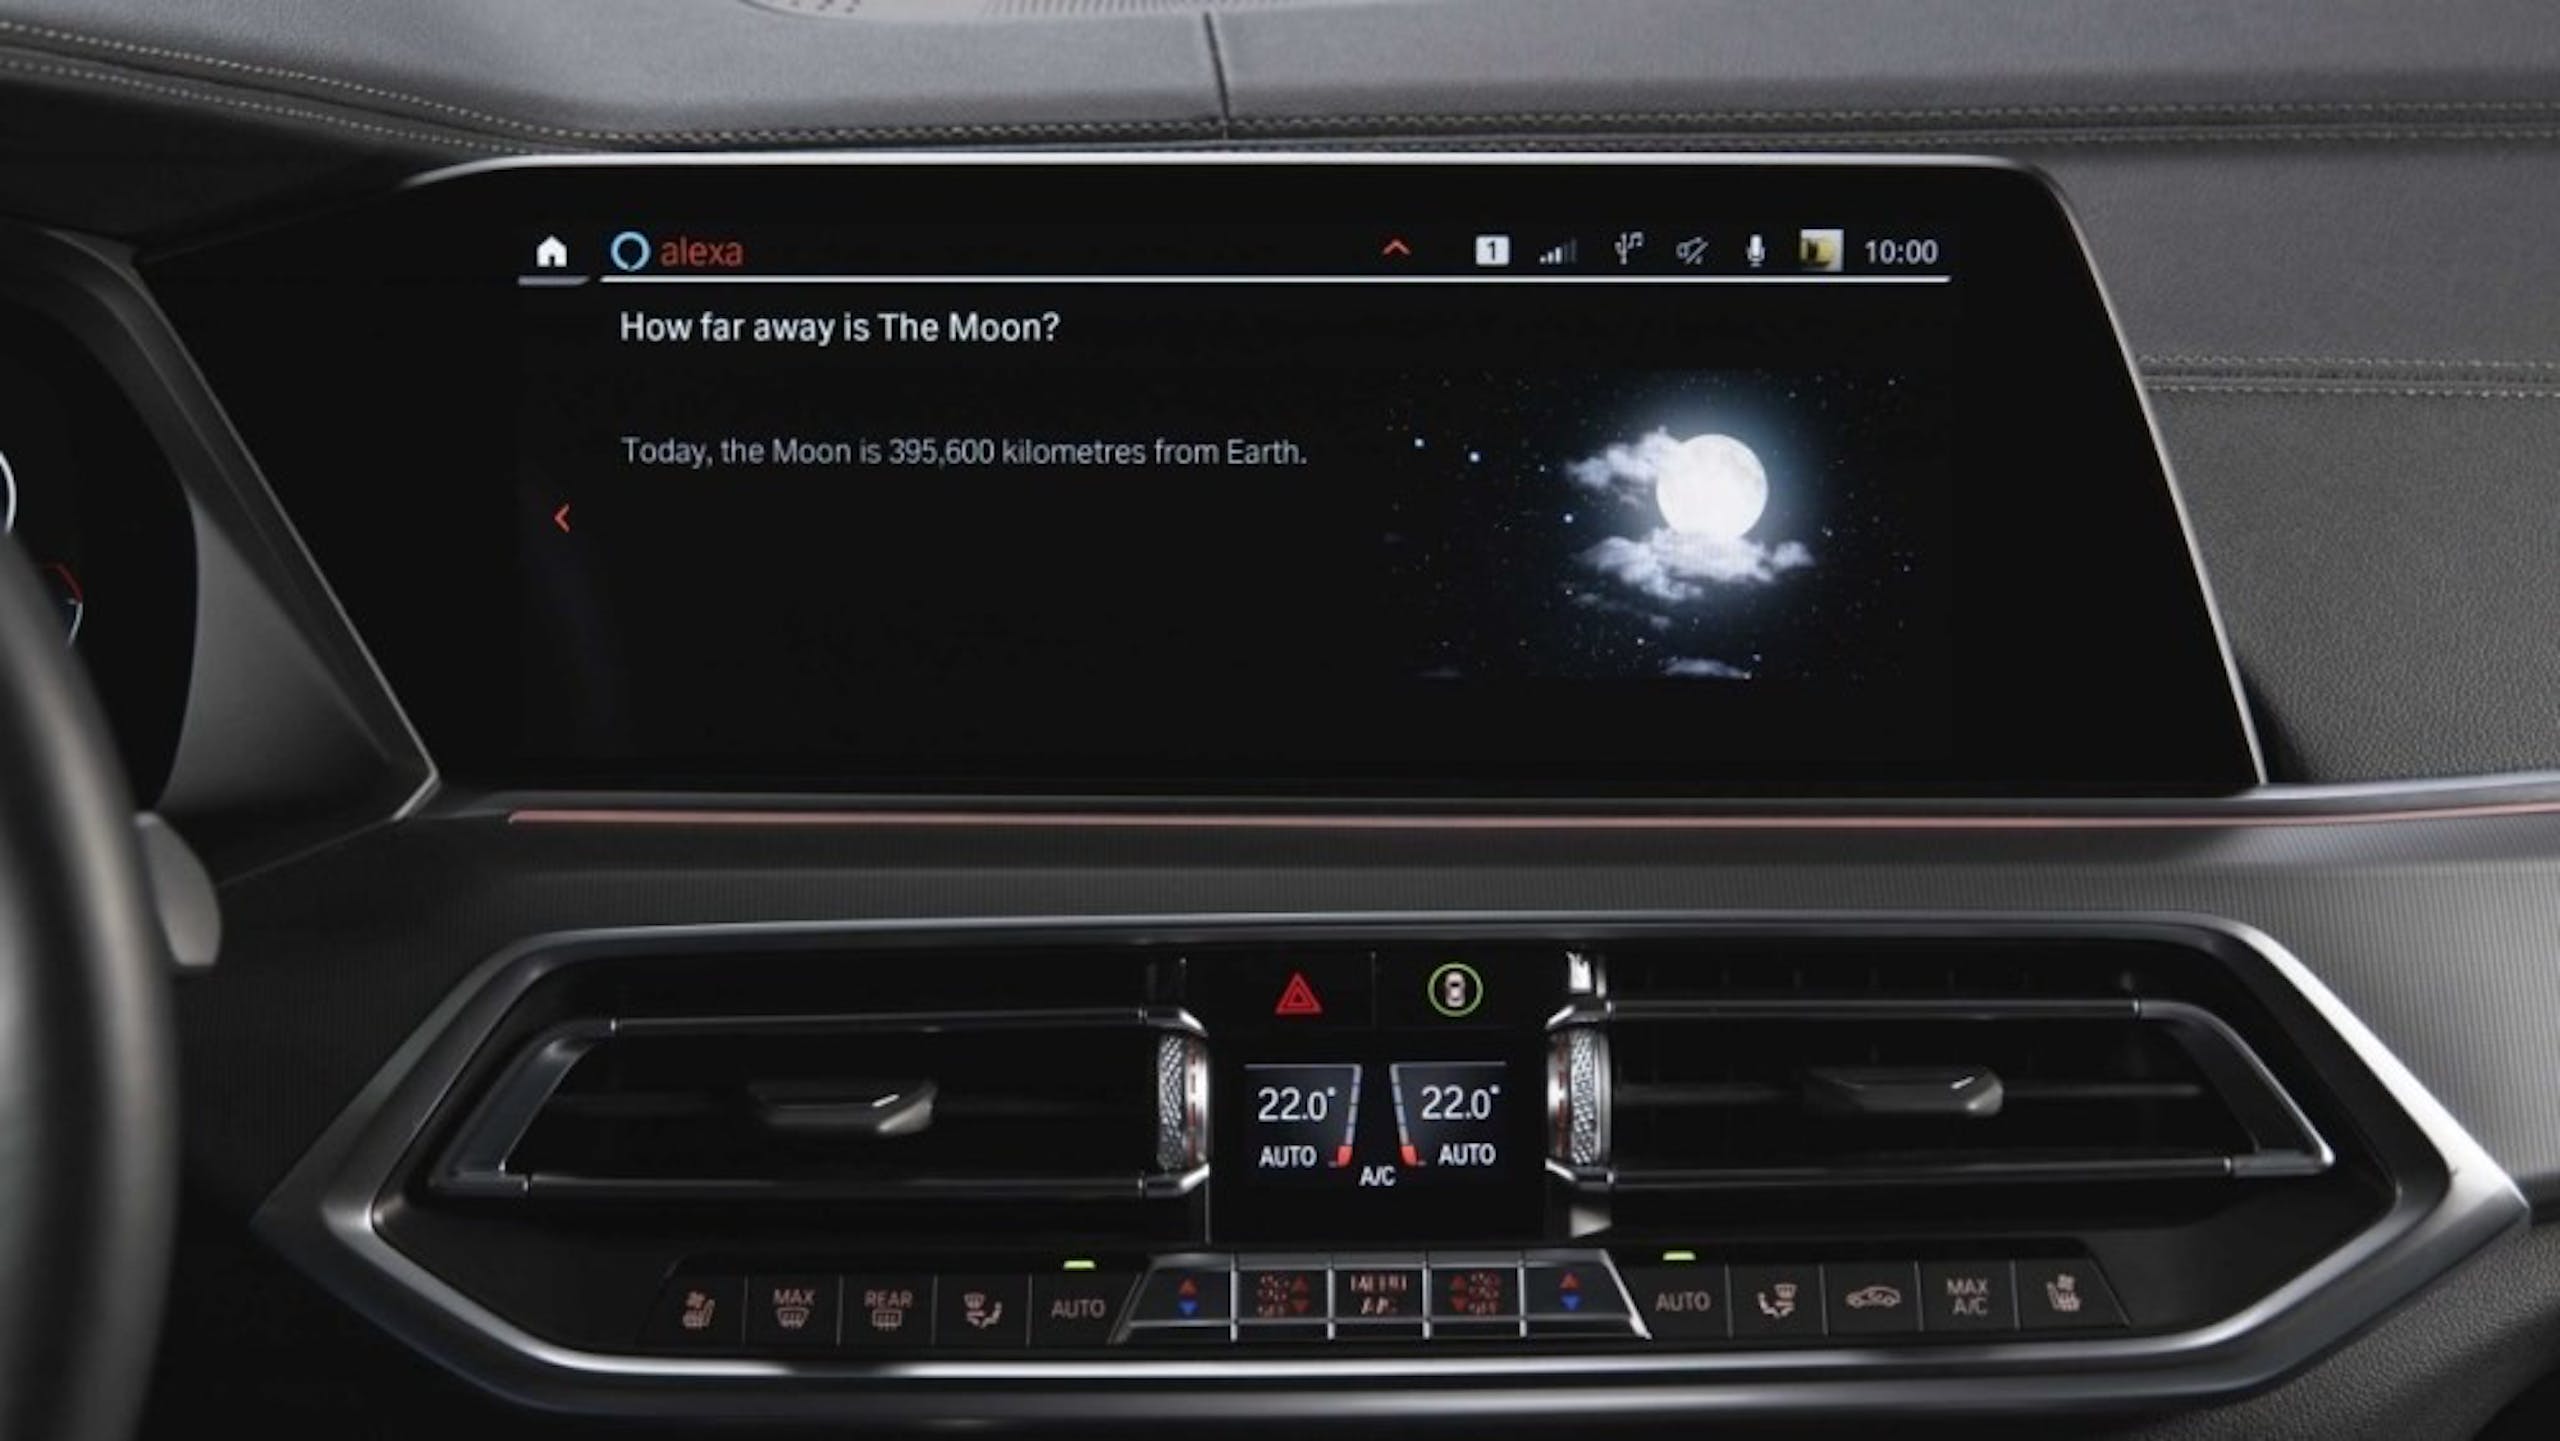 亞馬遜更新 Echo Auto 智慧車載系統 強化 Alexa 車輛助理應用佈局 並與 BMW 深入合作